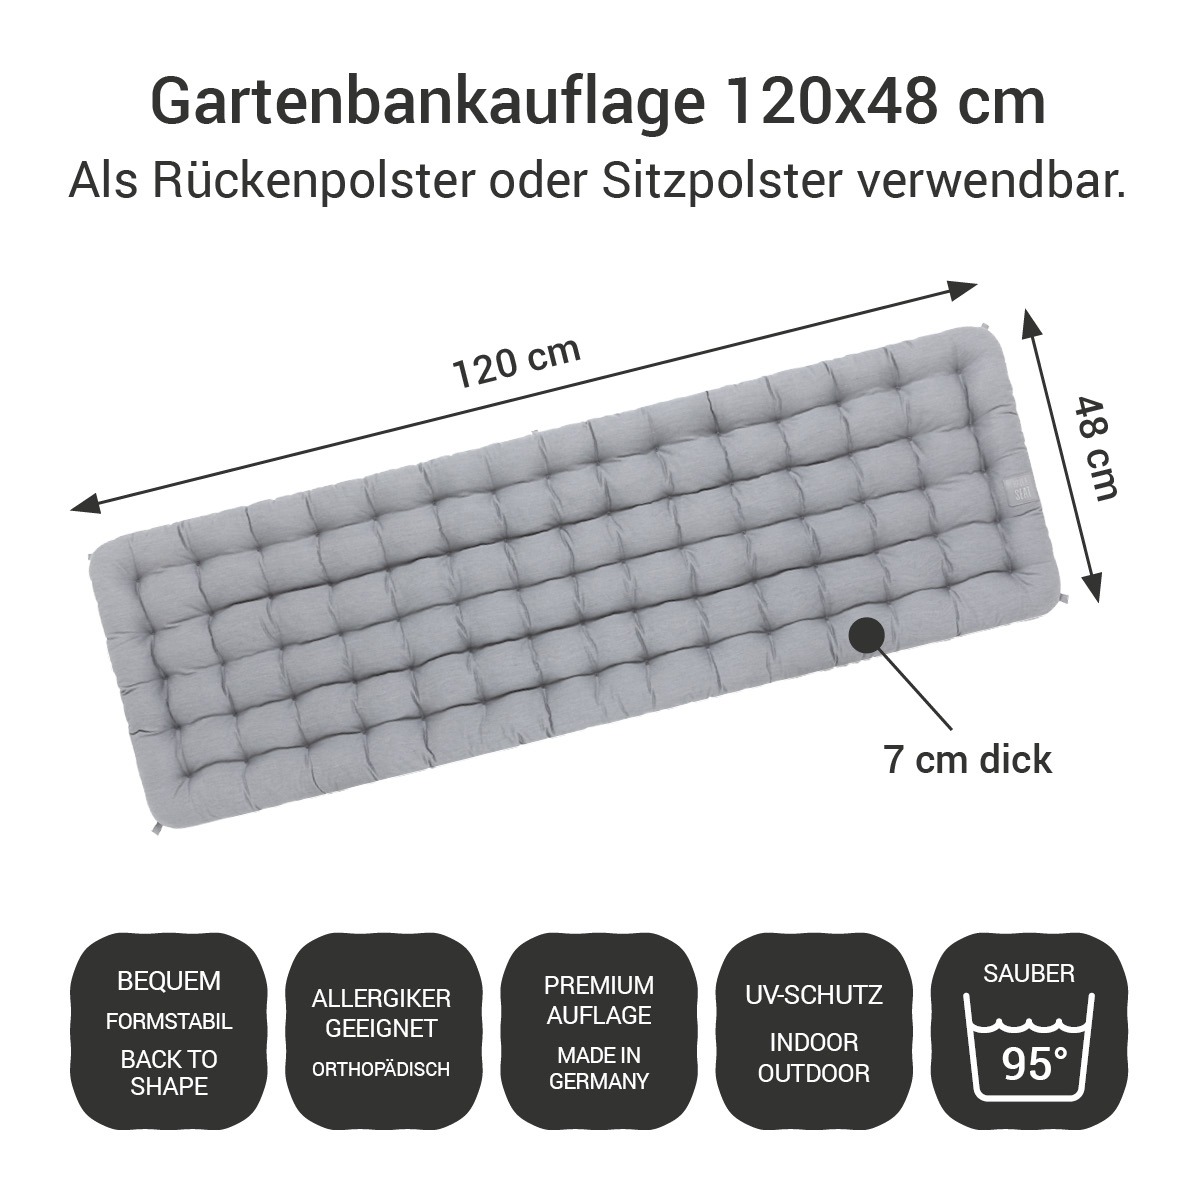 Gartenbankauflage hellgrau | 120x48 cm / 120 x 50 cm | bequem & orthopädisch, komplett im Ganzen waschbar bis 95°C, wetterfest, Made in Germany